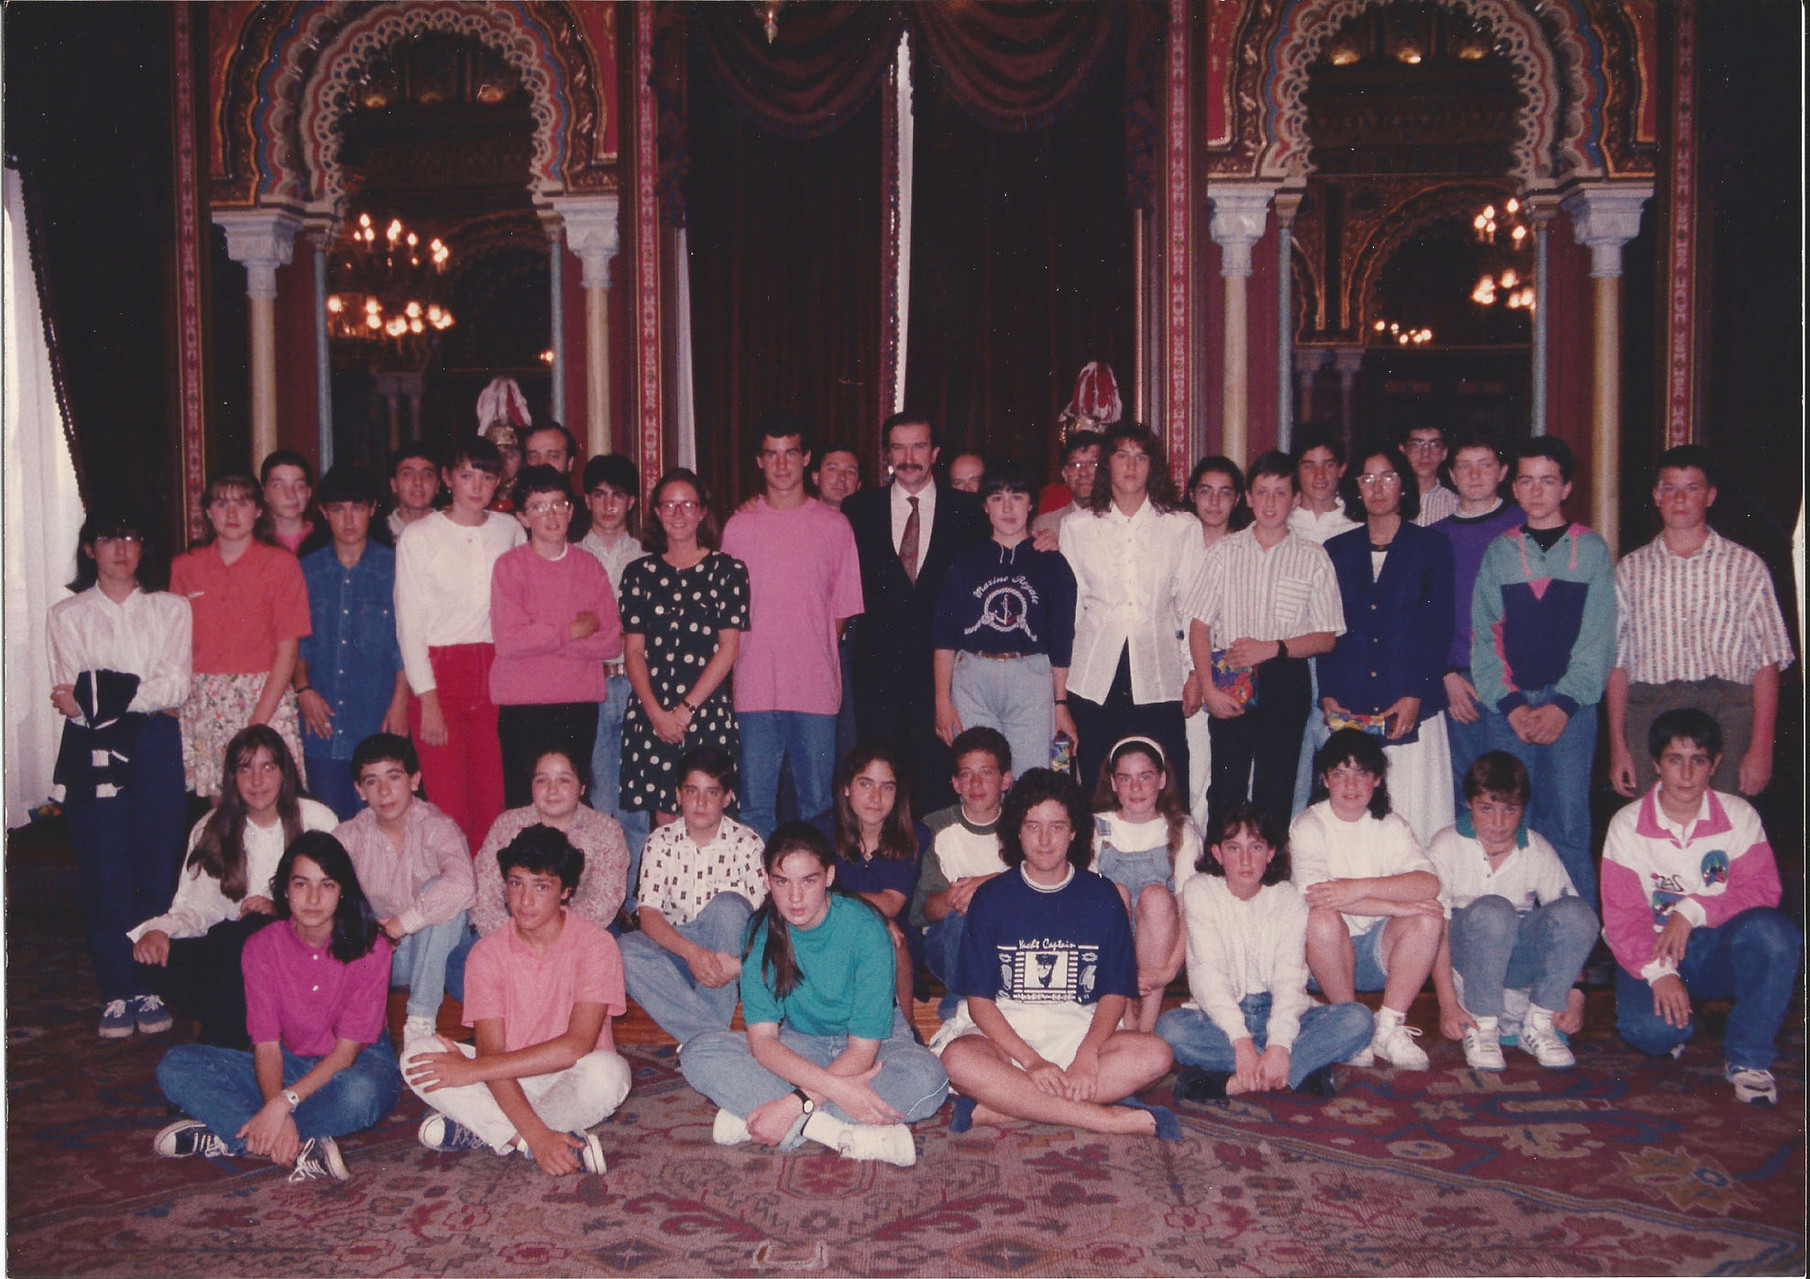 1991 Candidatos y premiados con Beca Viuda de Epalza. Premiados por C.P. Zurbaran Lourdes Pérez y Gonzalo Pellejero